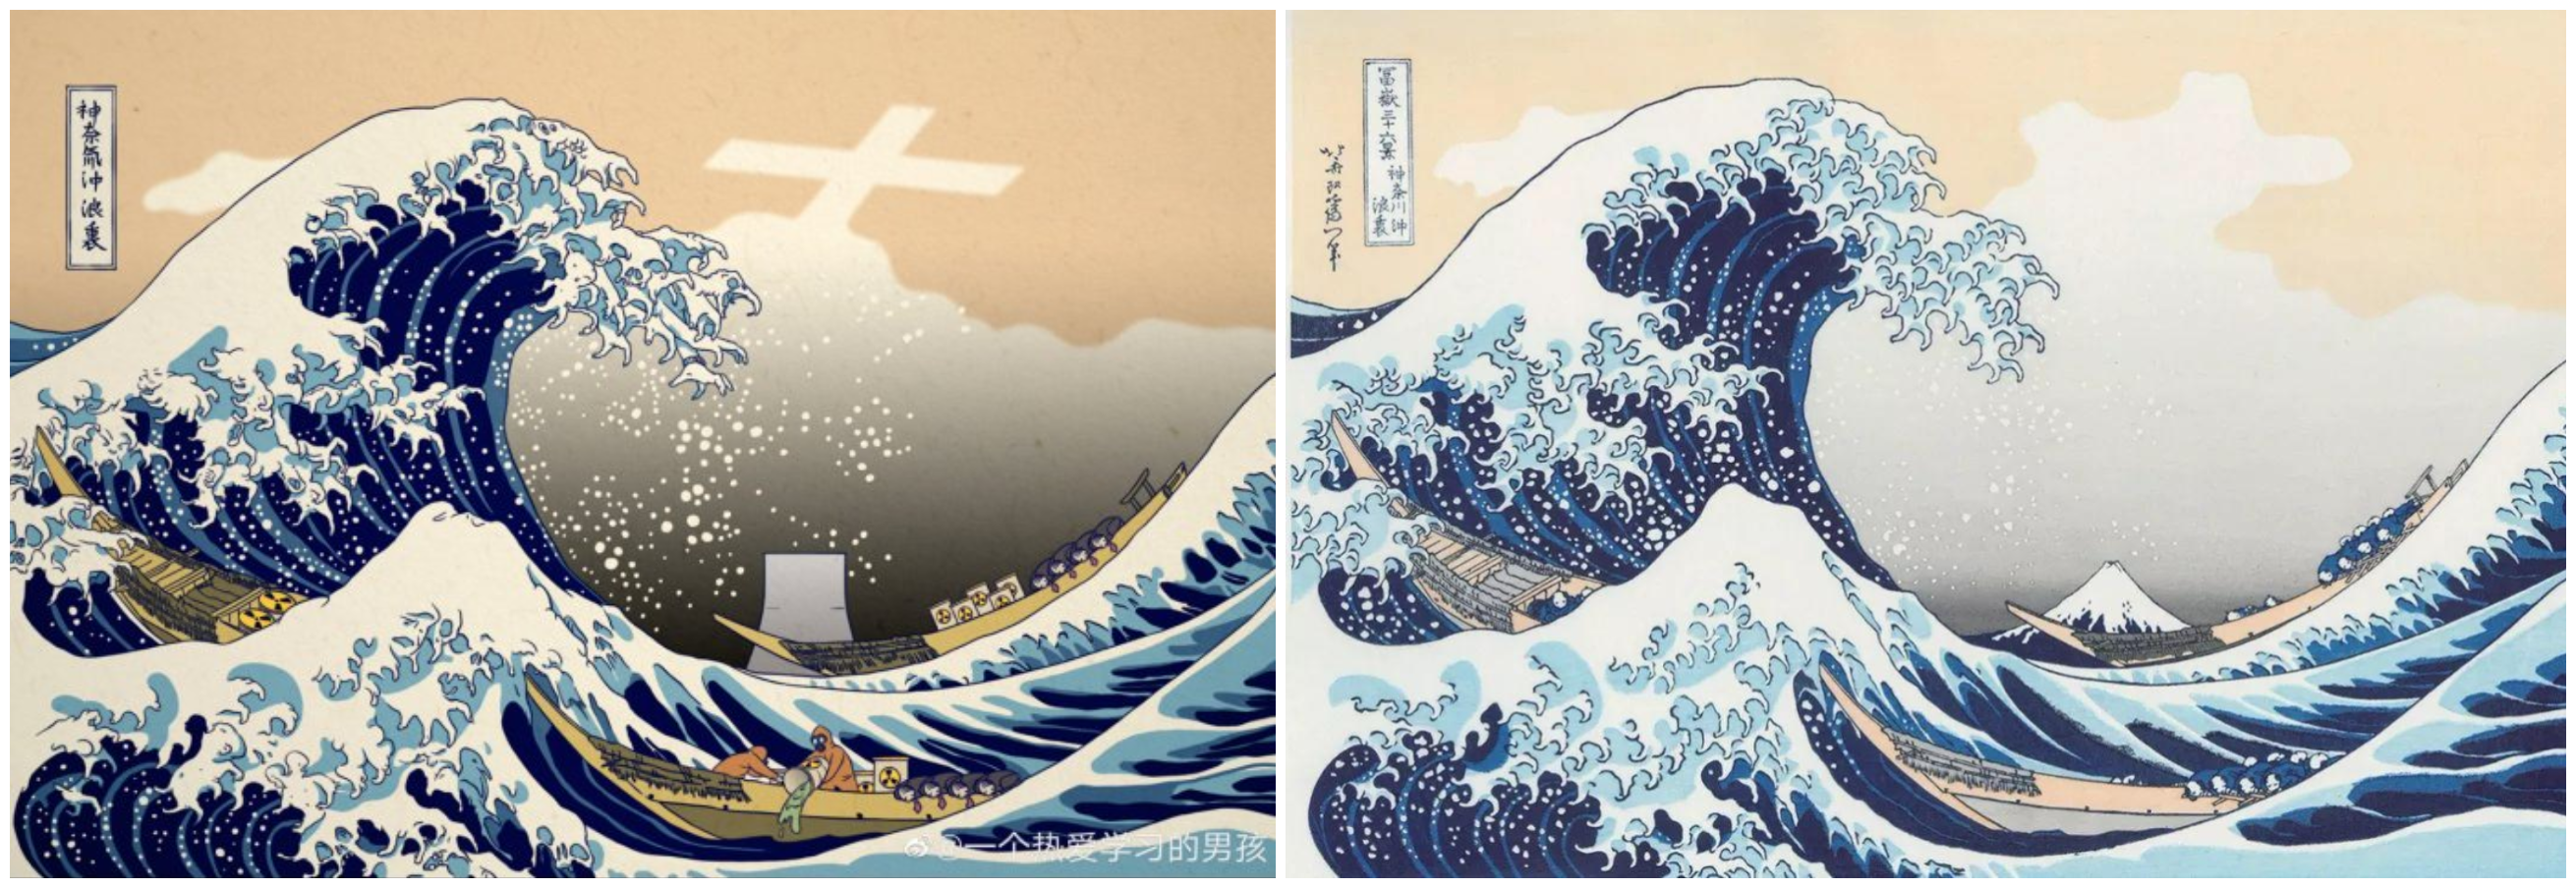 《神奈氚冲浪里》,并附文:中国的插画师重新创作了日本画作《神奈川